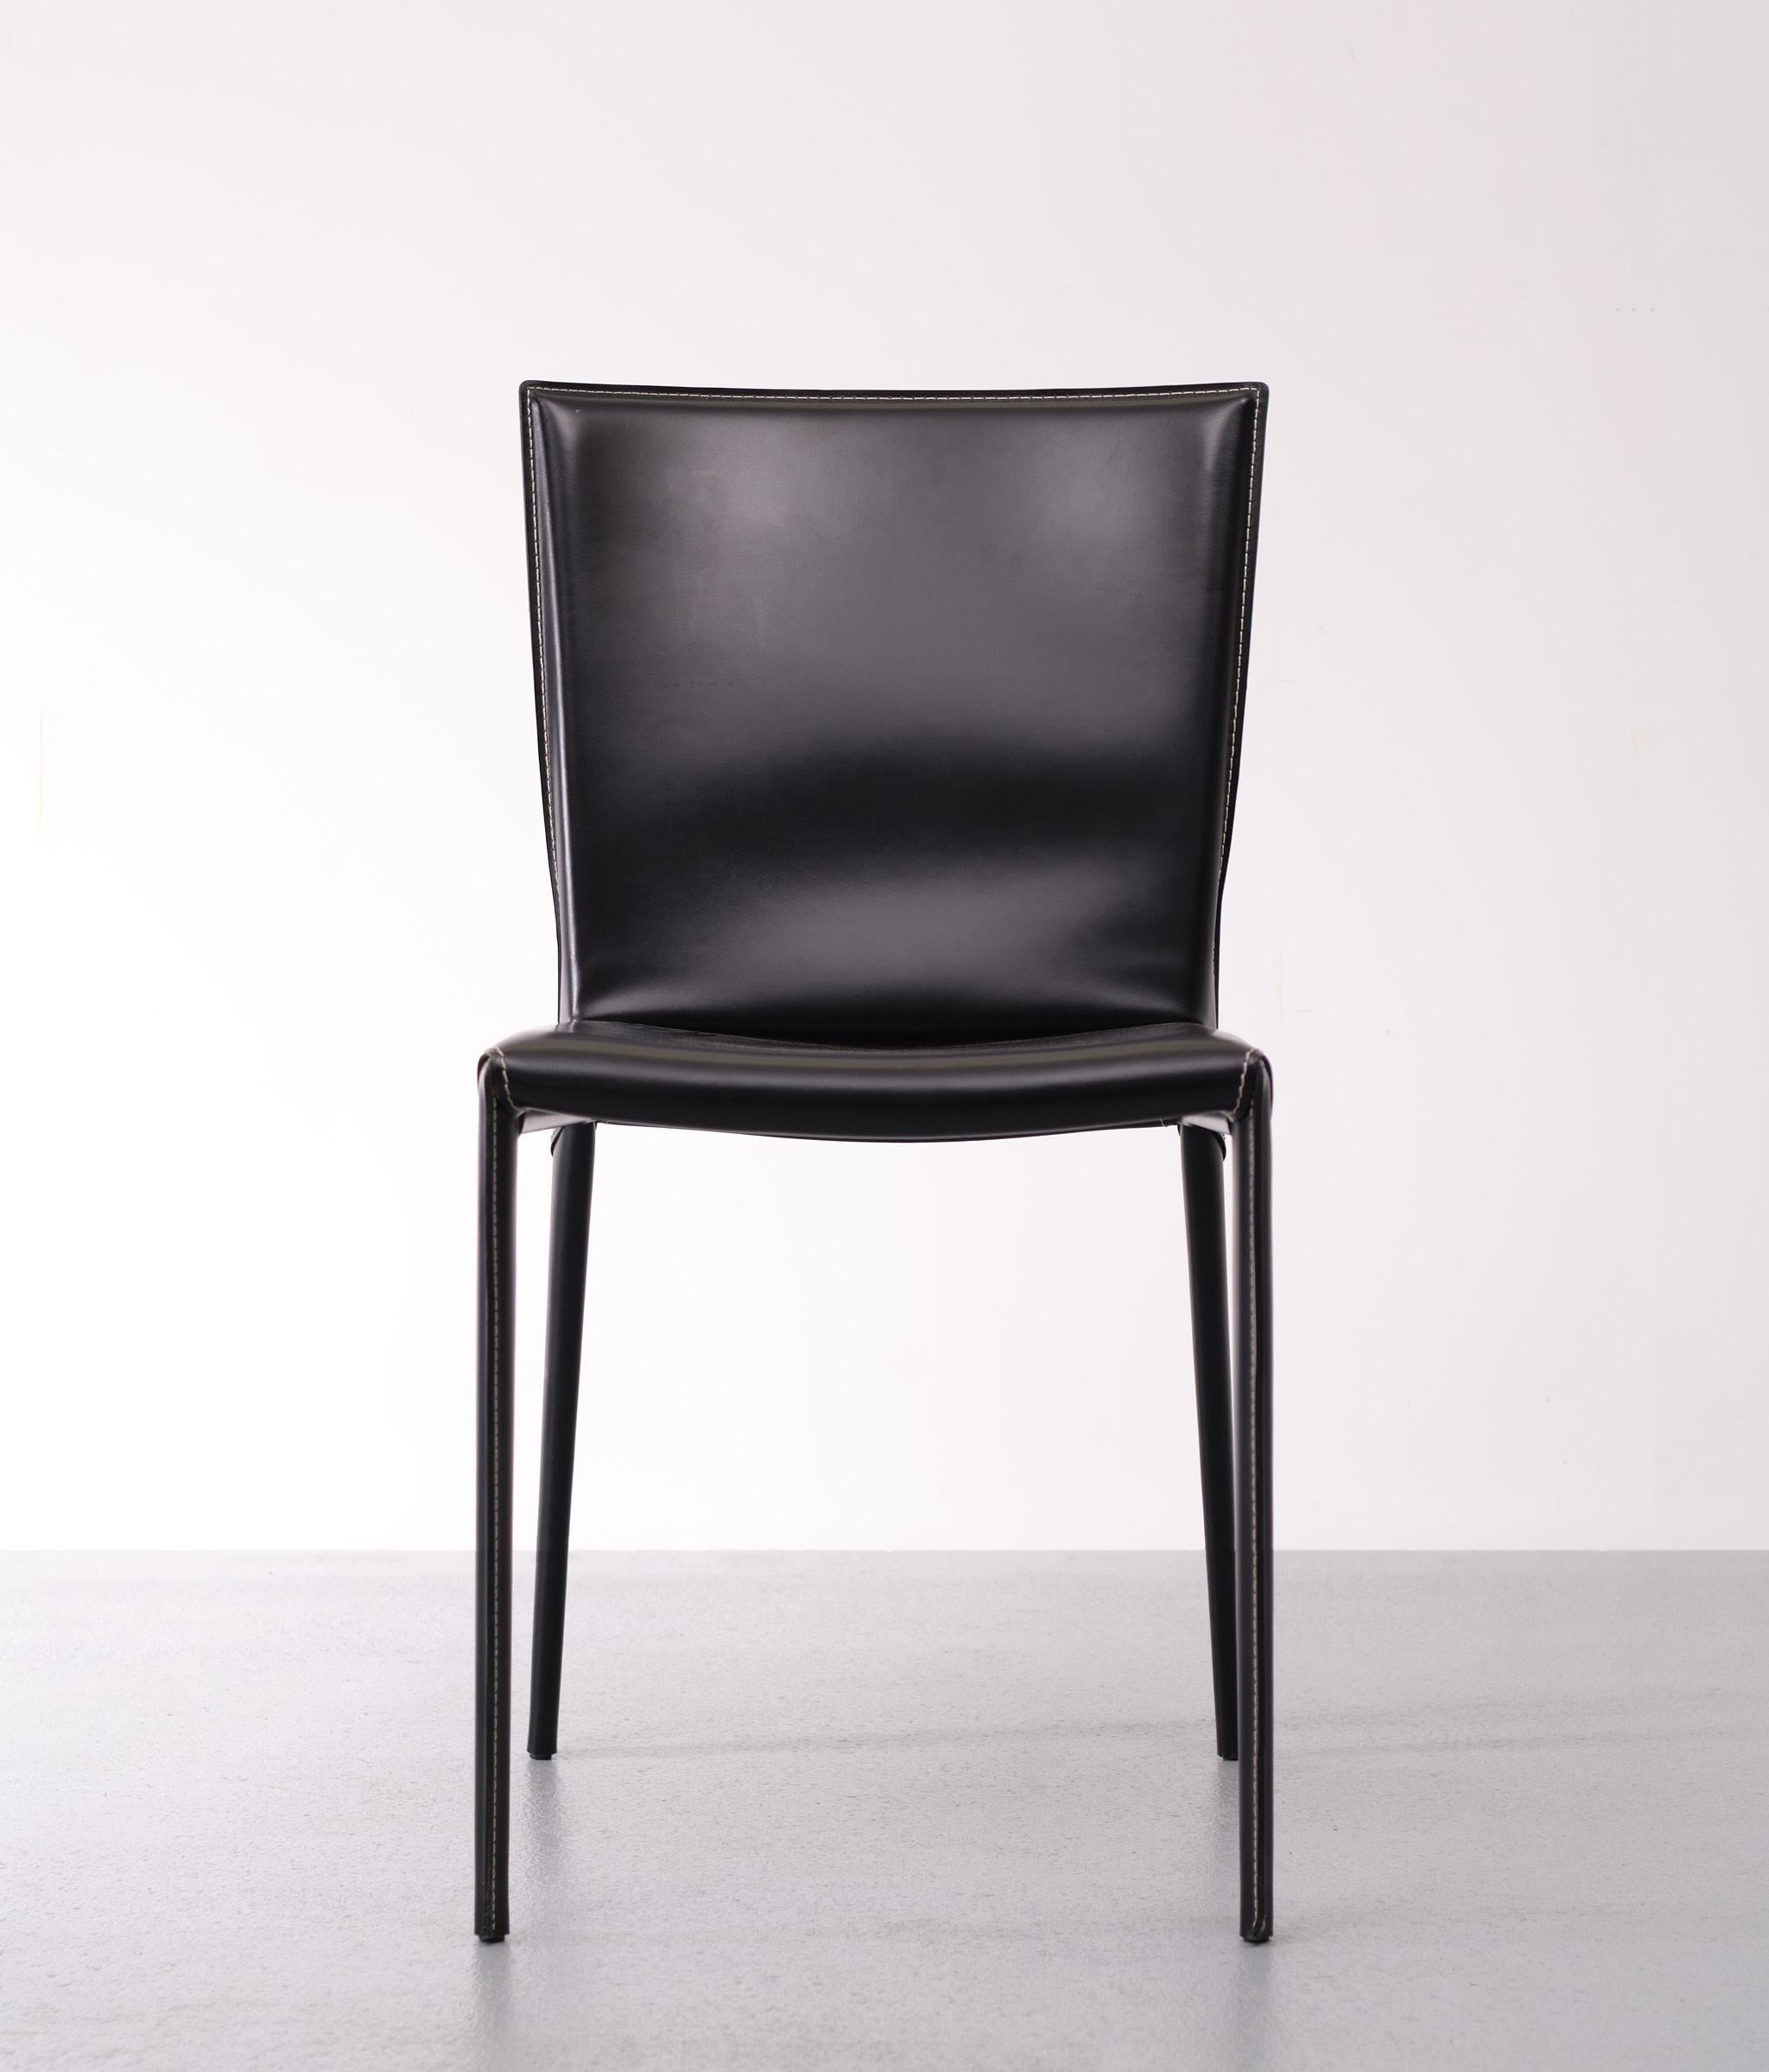 La chaise moderne Beverly est issue de la créativité de Paolo Cattelan et allie une personnalité élégante et raffinée au confort qui distingue une chaise design d'excellente qualité. Cette chaise en cuir, conçue pour meubler n'importe quelle pièce